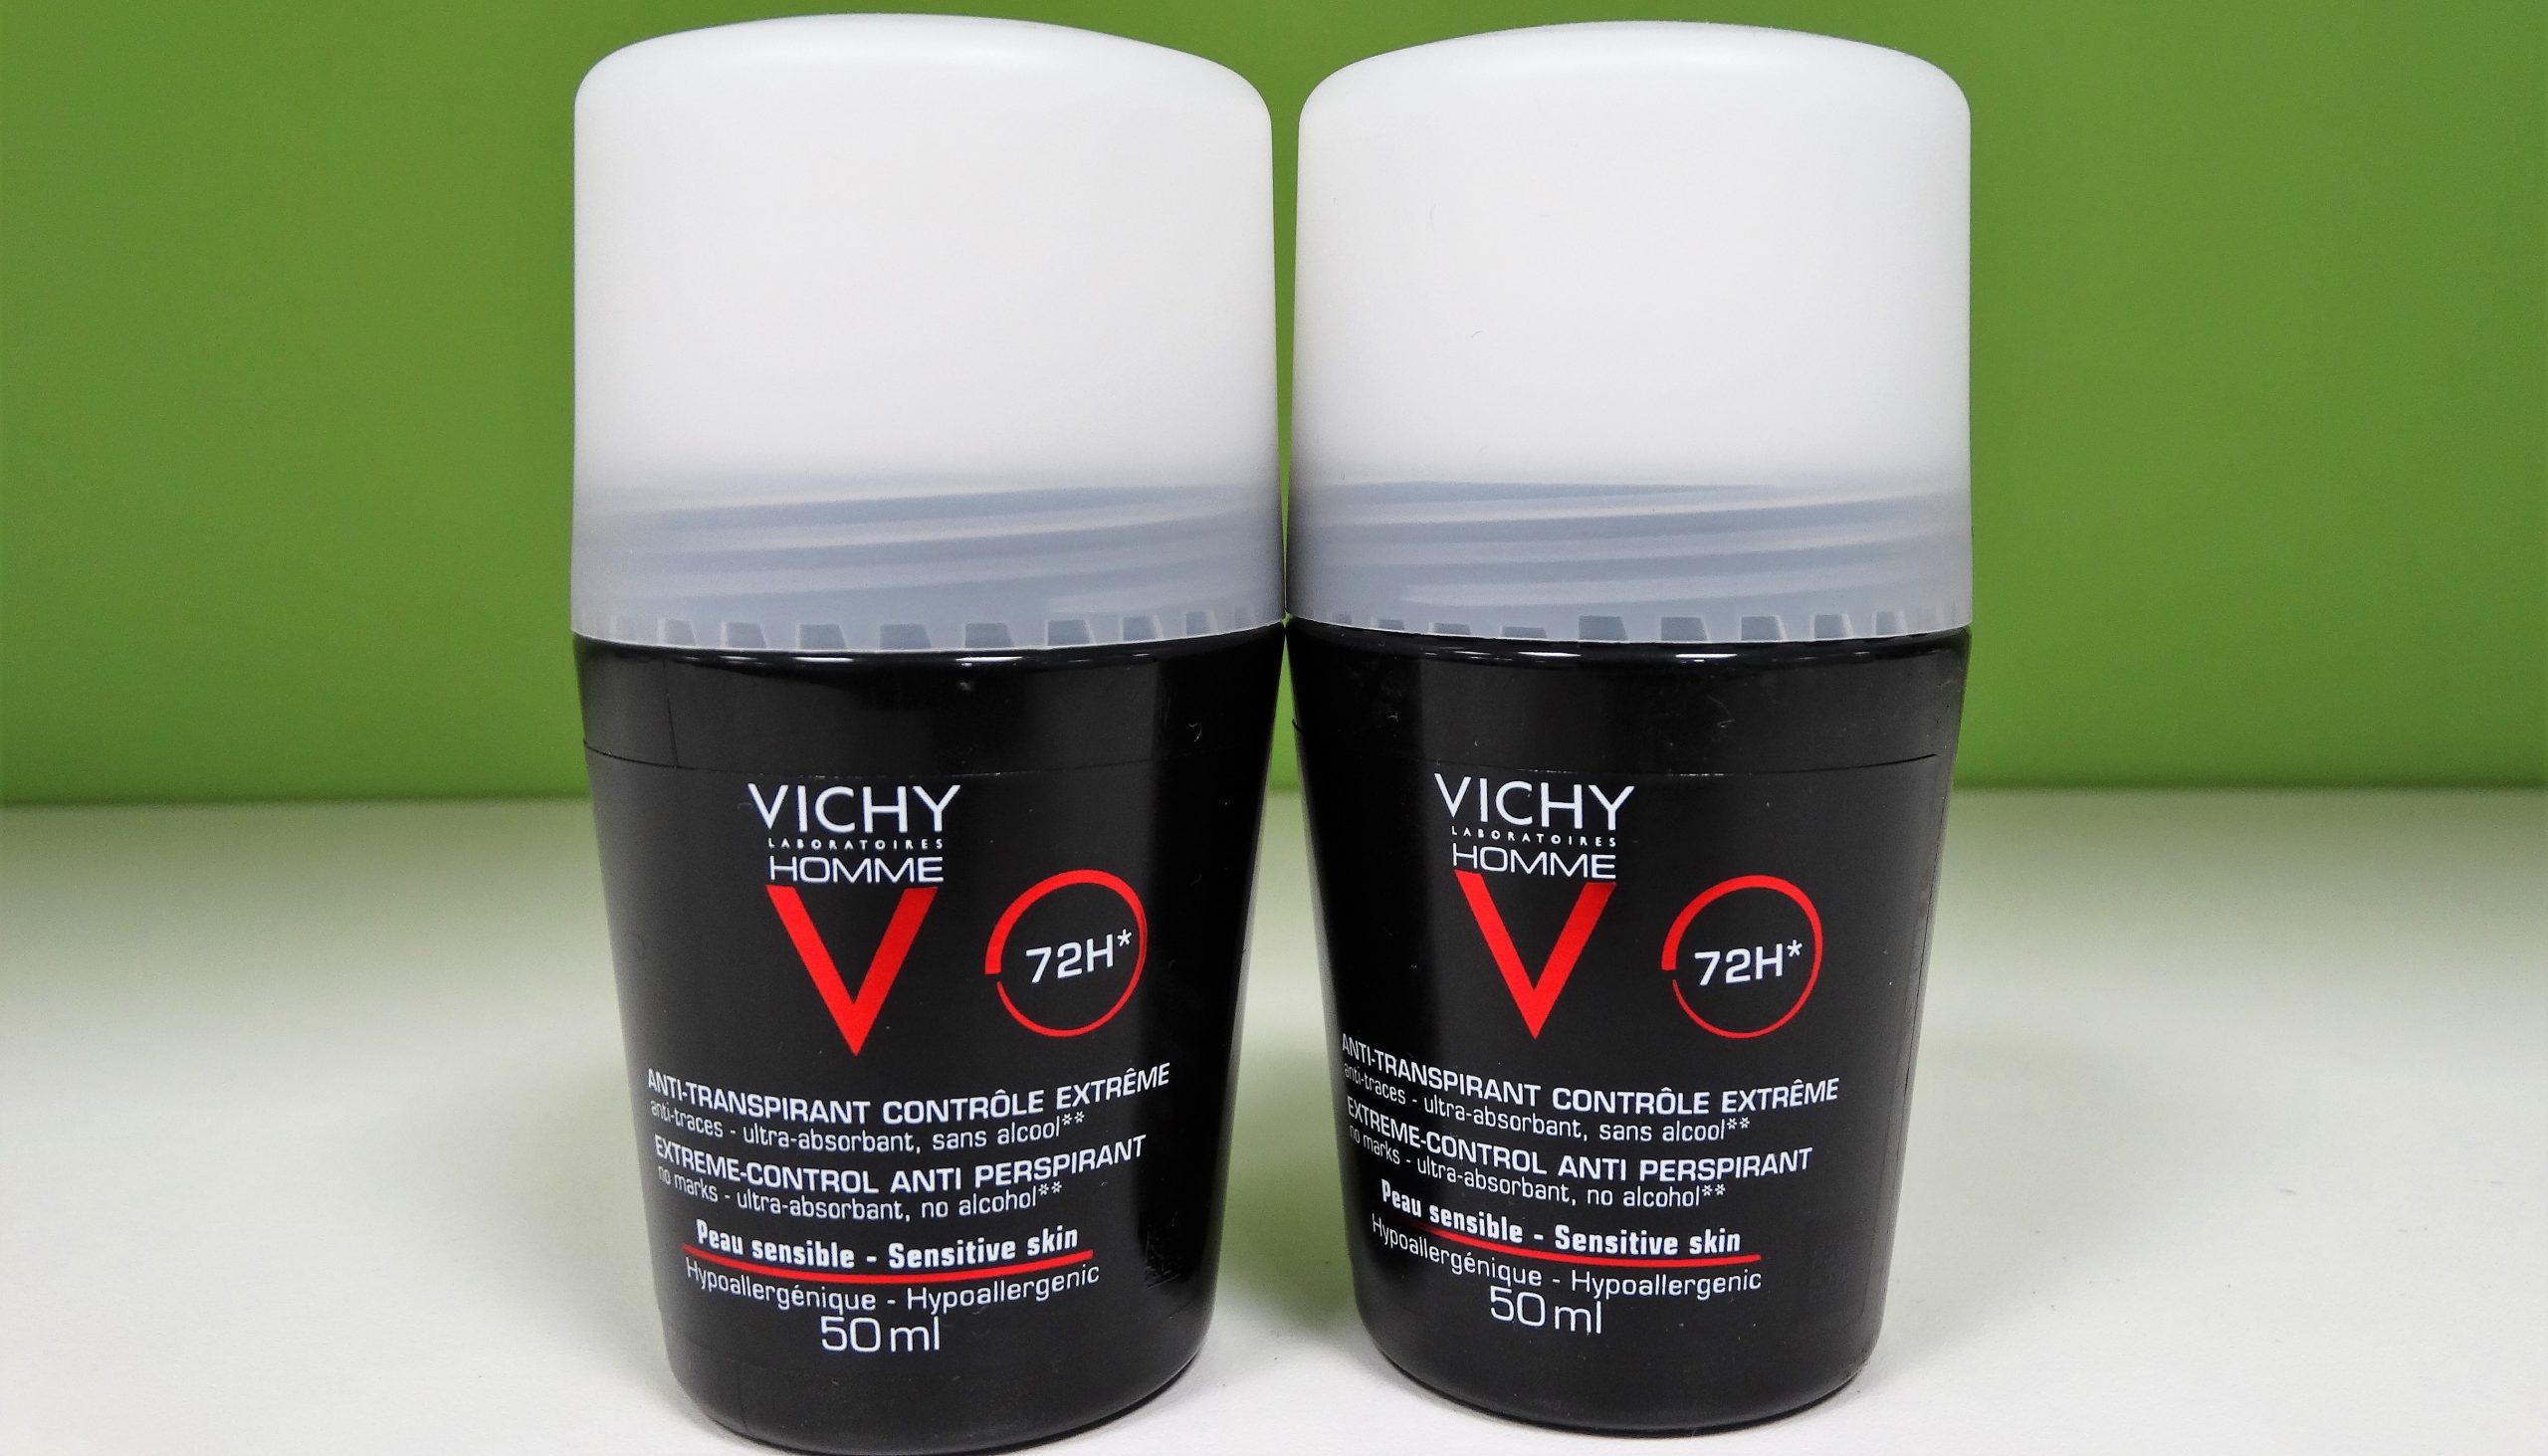 VICHY HOMME DESODORANTE REGULACIÓN INTENSA 72H ROLL ON 50ML La transpiración en los hombres es más intensa y, por ello, Vichy ha creado un desodorante especial que cubra las necesidades masculinas